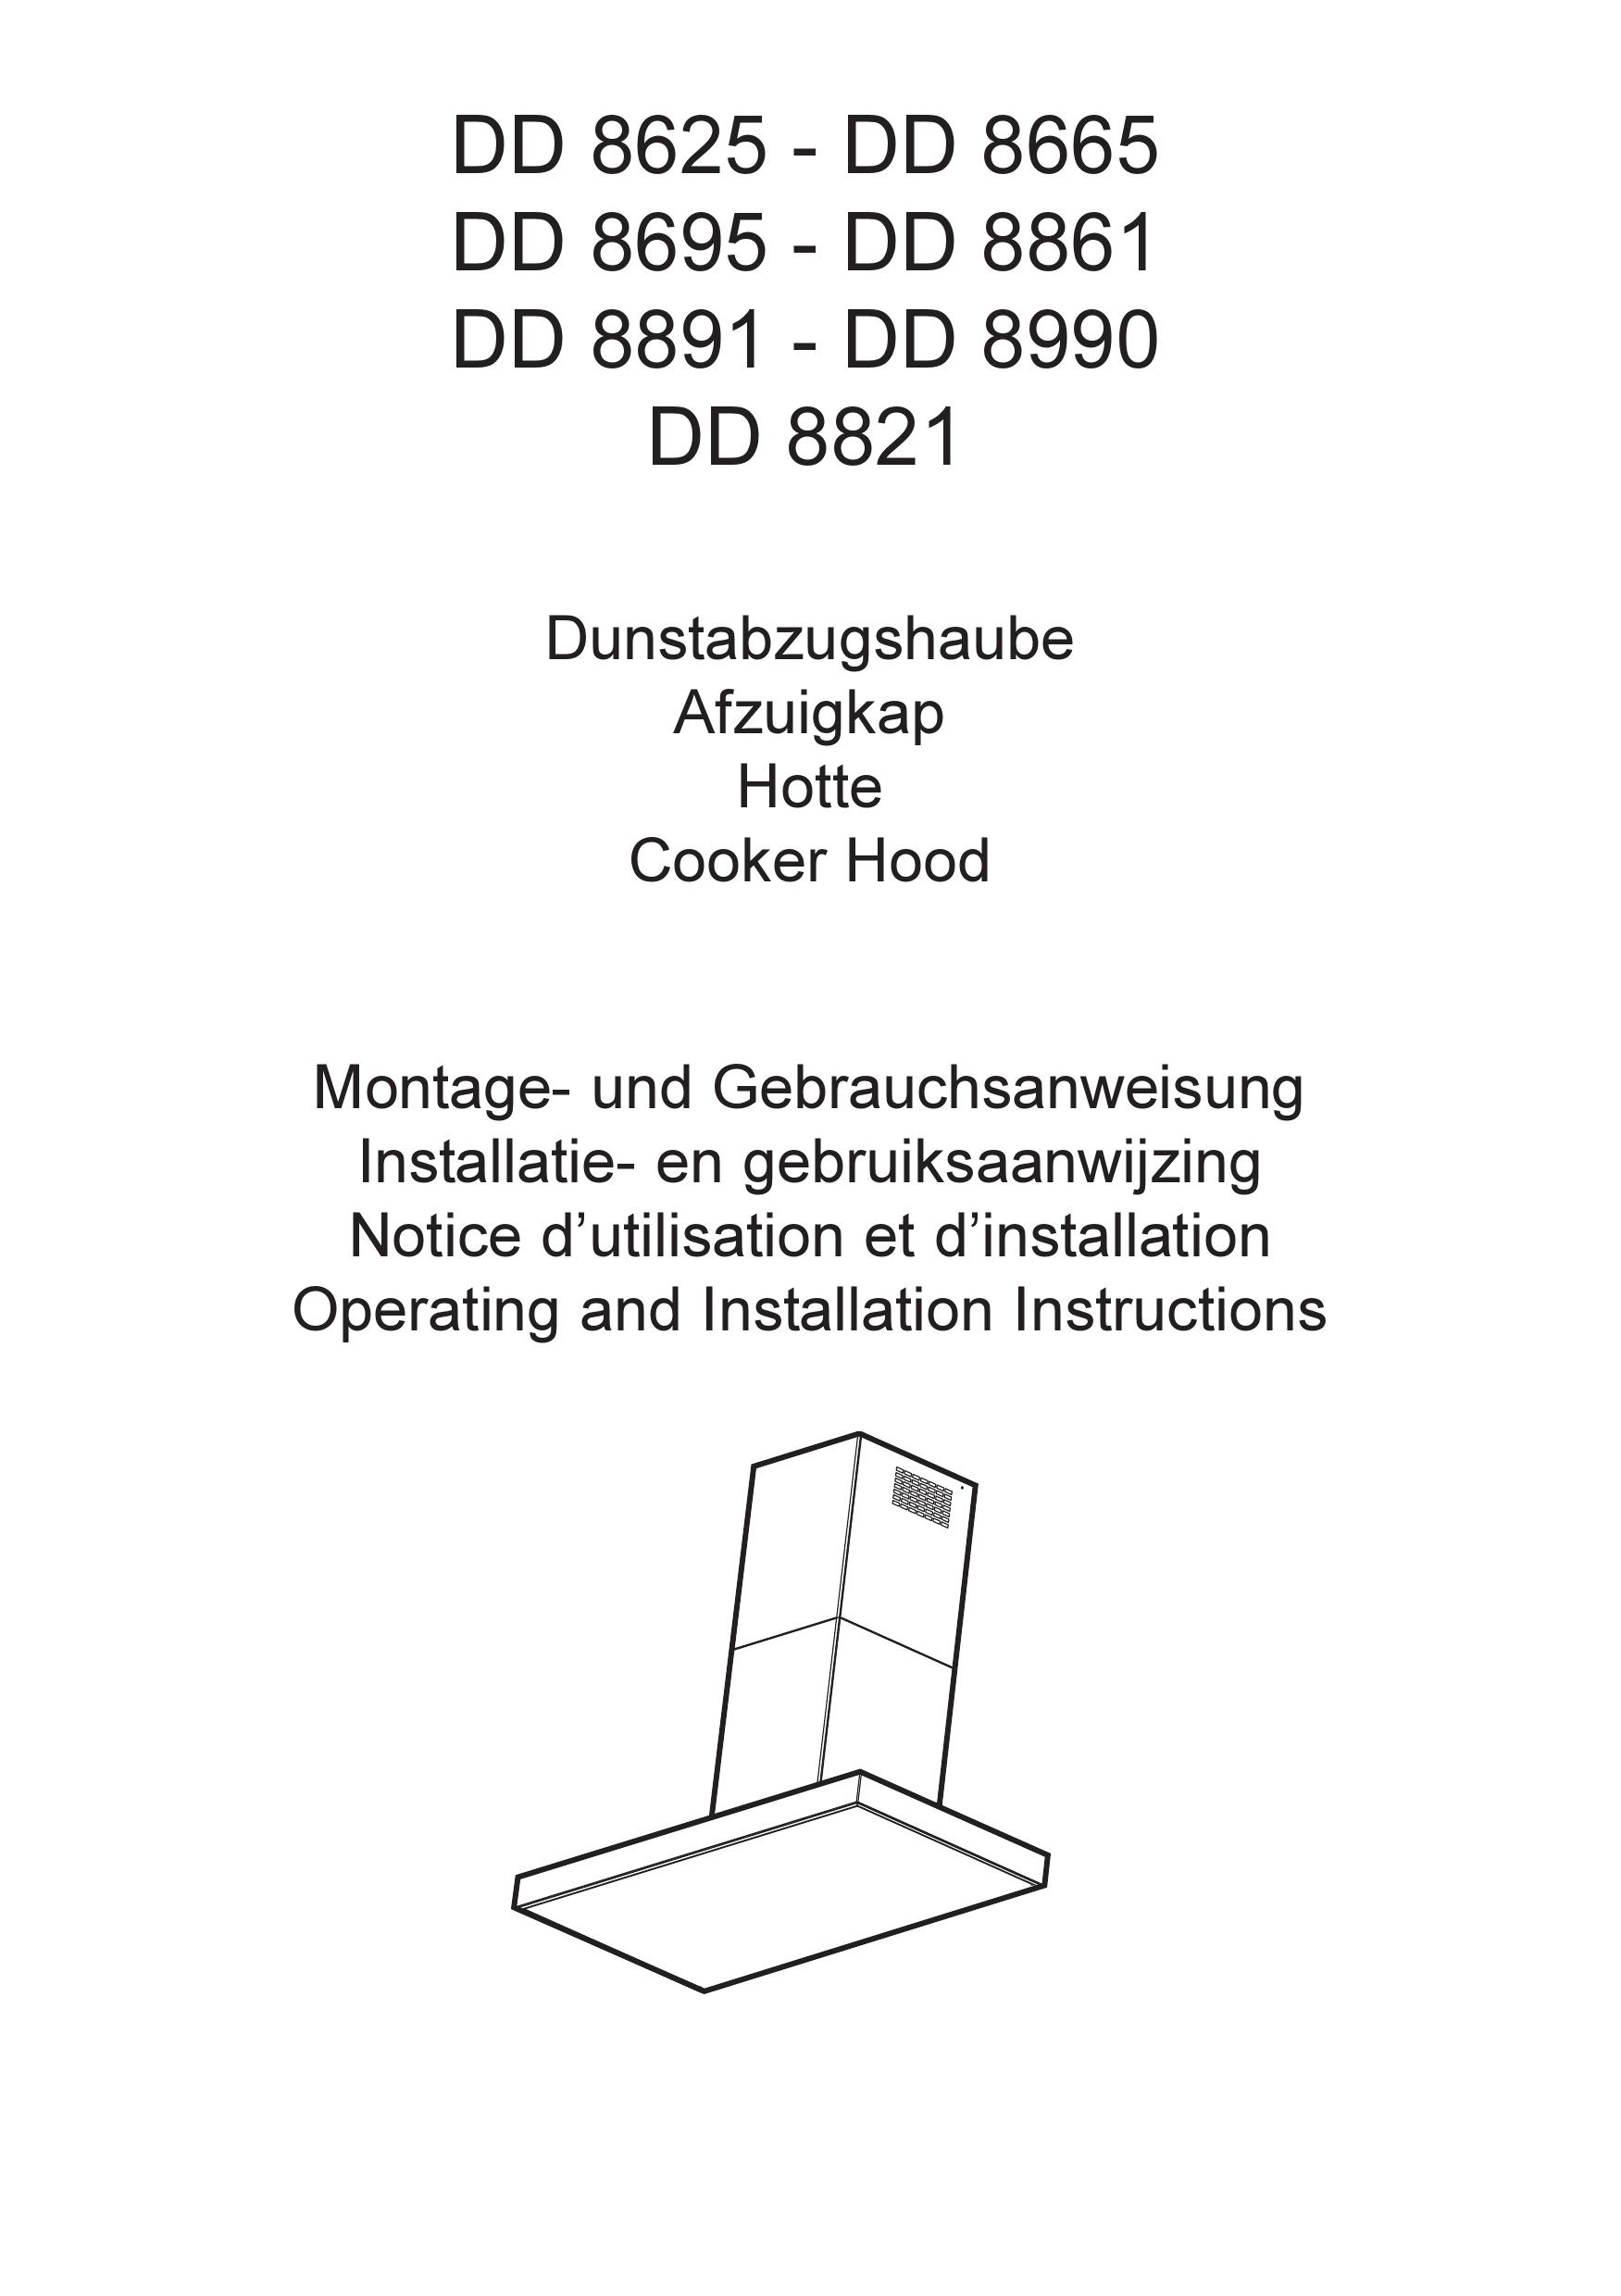 AEG DD 8990 Ventilation Hood User Manual